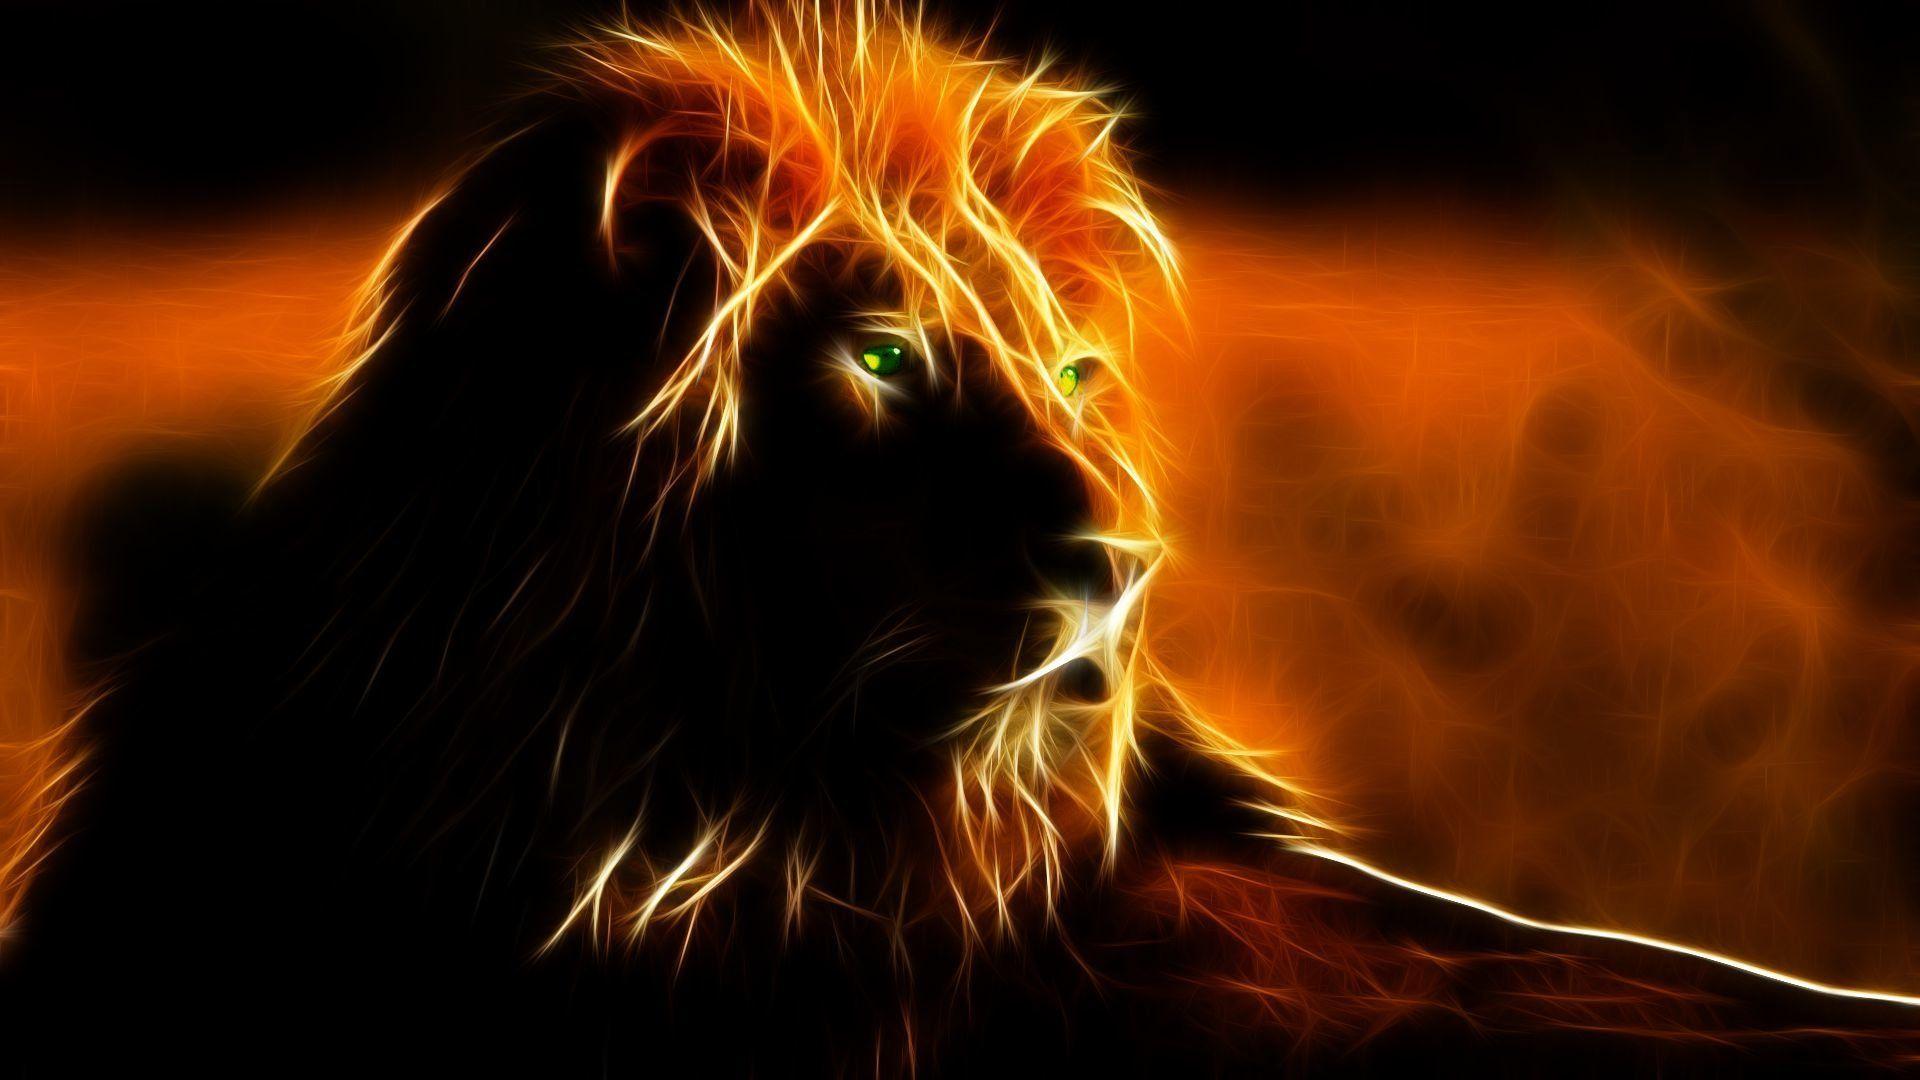 Download Lion Fire Wallpaper RoyaltyFree Stock Illustration Image  Pixabay